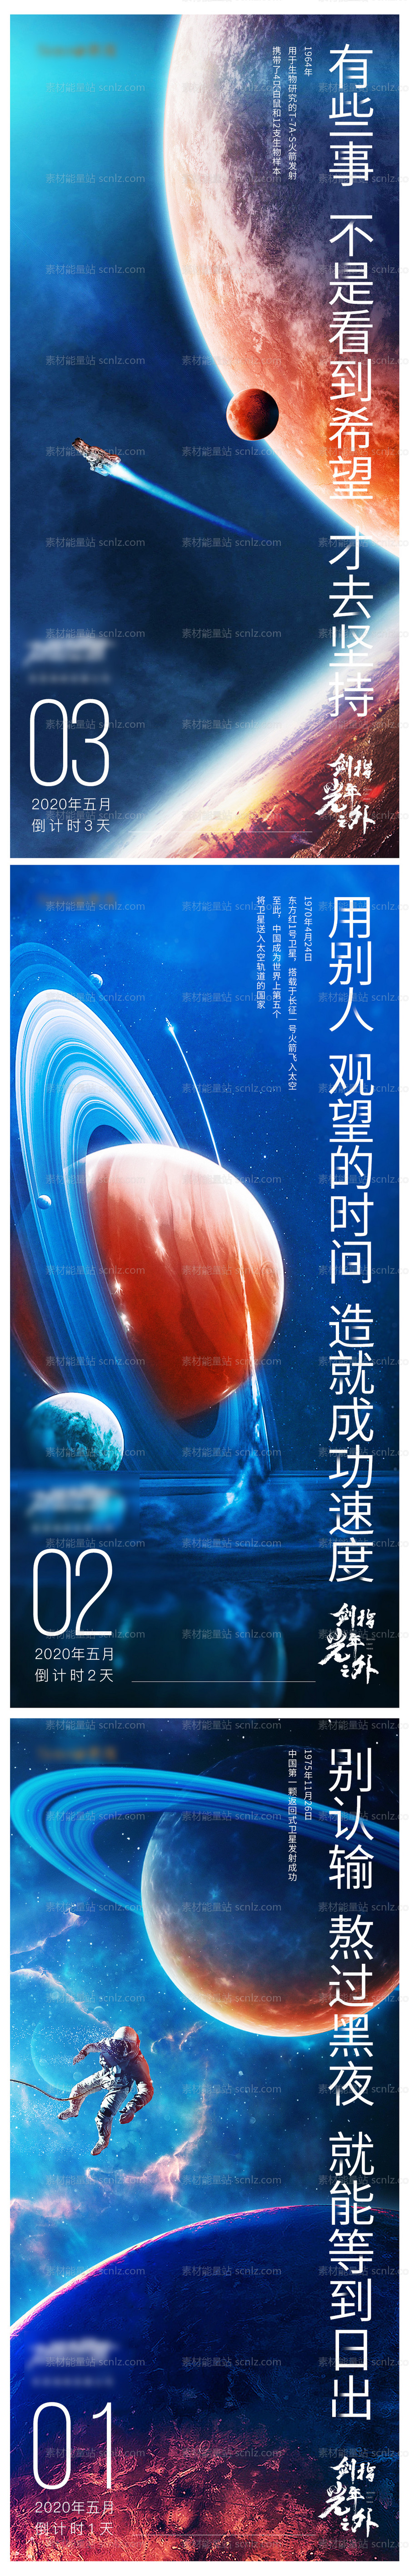 素材能量站-倒计时太空系列海报